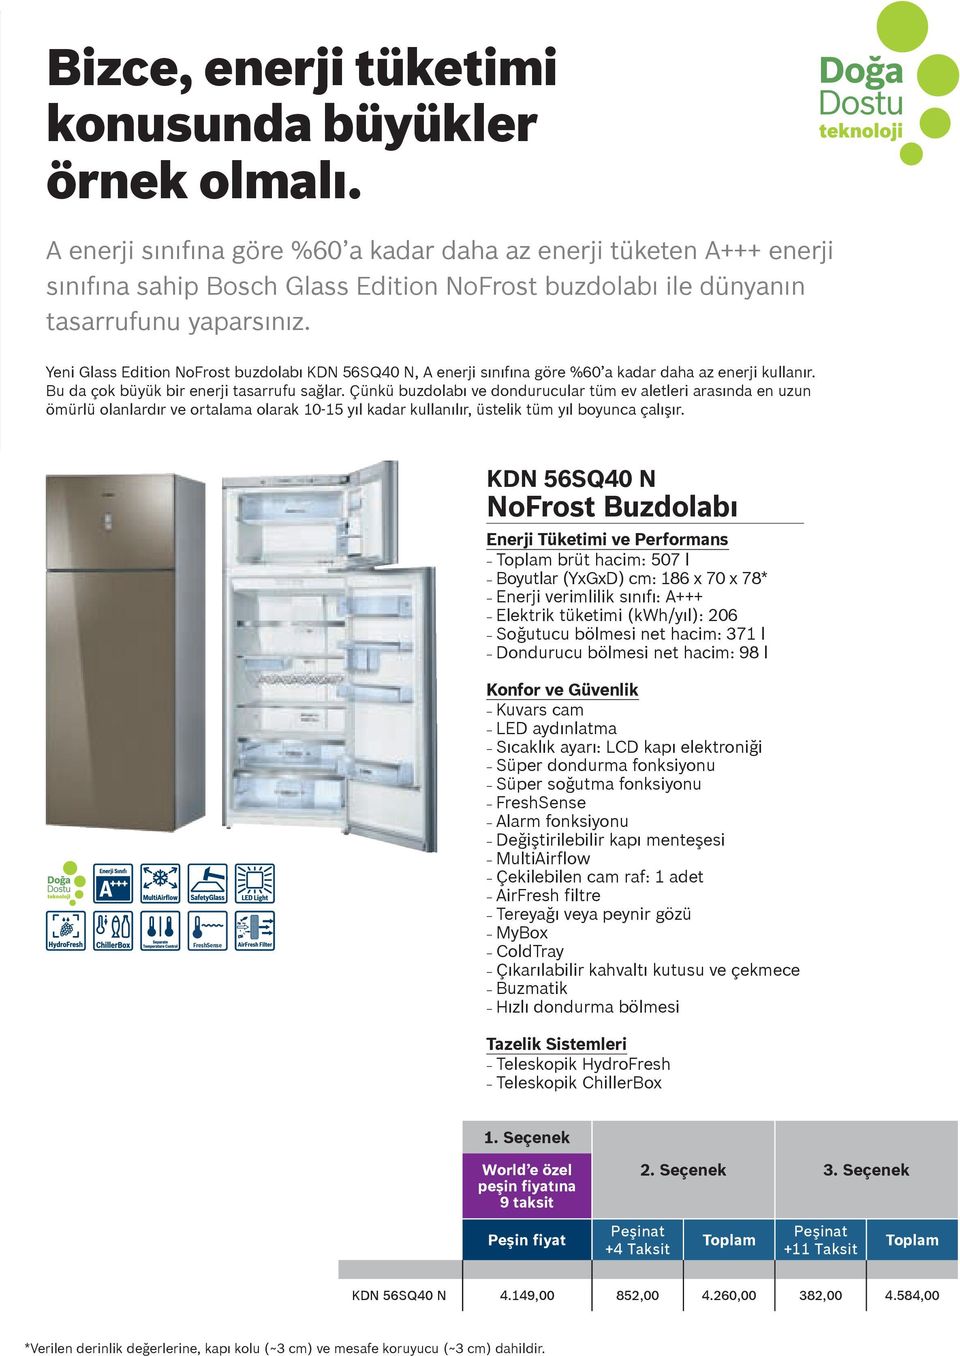 Yeni Glass Edition NoFrost buzdolabı KDN 56SQ40 N, A enerji sınıfına göre %60 a kadar daha az enerji kullanır. Bu da çok büyük bir enerji tasarrufu sağlar.